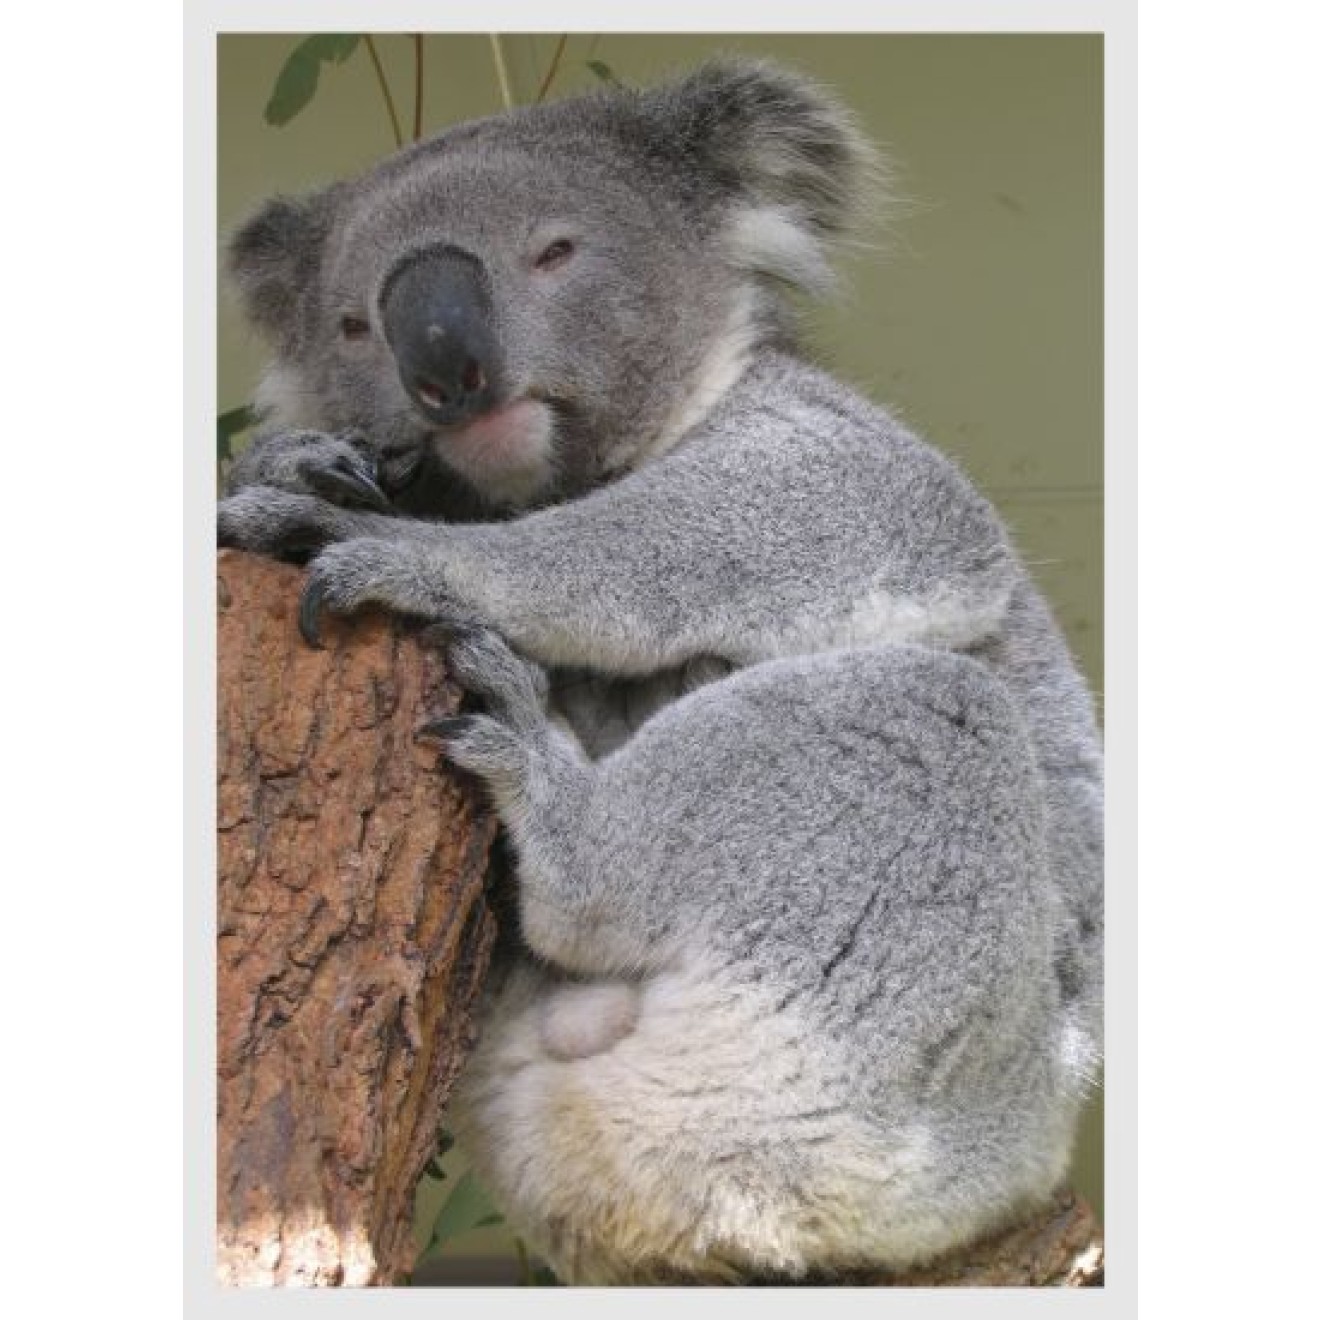 Koalabär